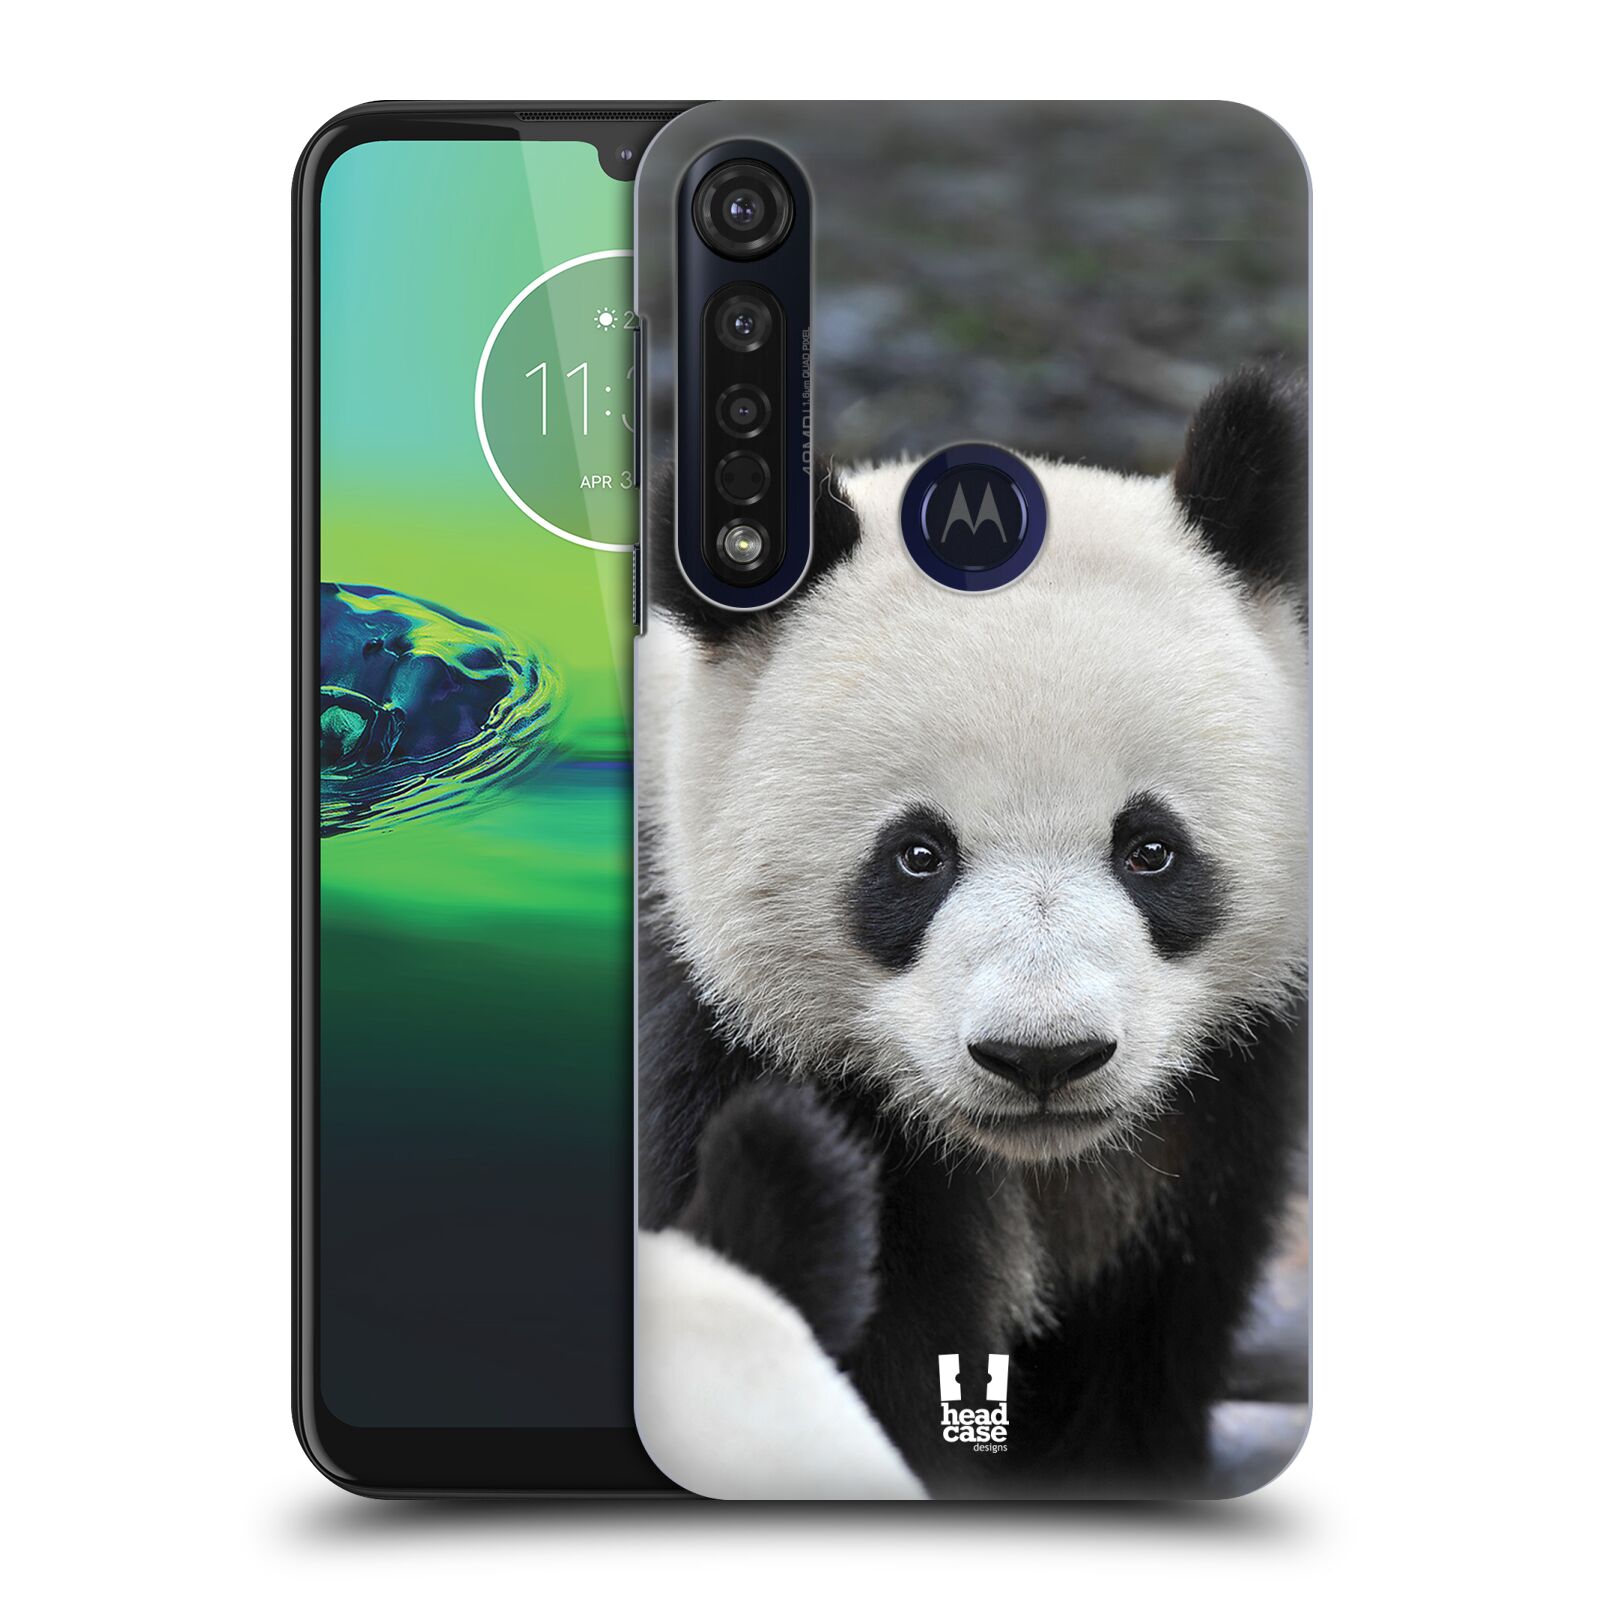 Pouzdro na mobil Motorola Moto G8 PLUS - HEAD CASE - vzor Divočina, Divoký život a zvířata foto MEDVĚD PANDA